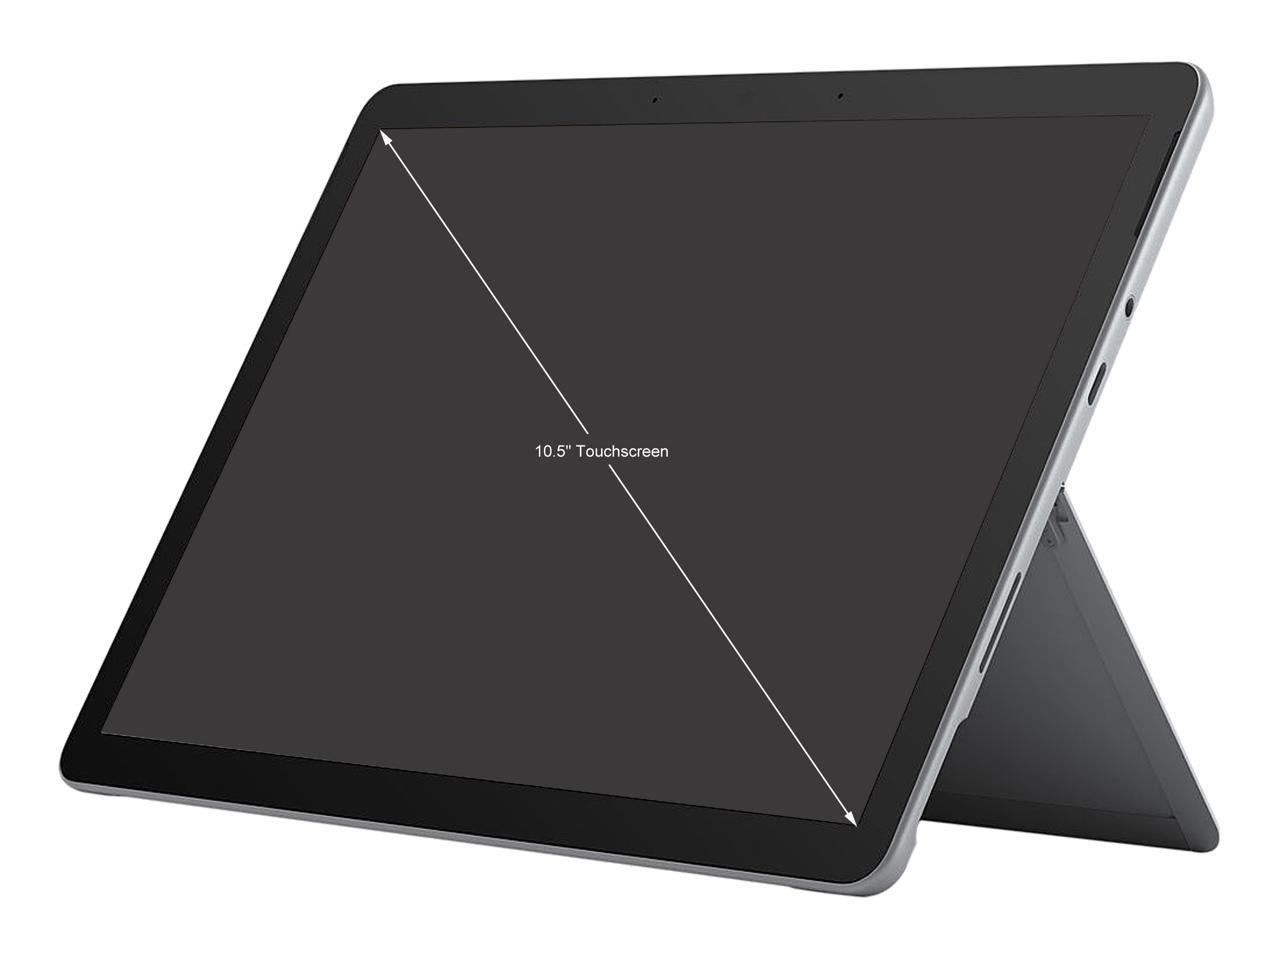 Microsoft Surface Go 3 8VA-00001 2-in-1 Laptop Intel Pentium Gold 